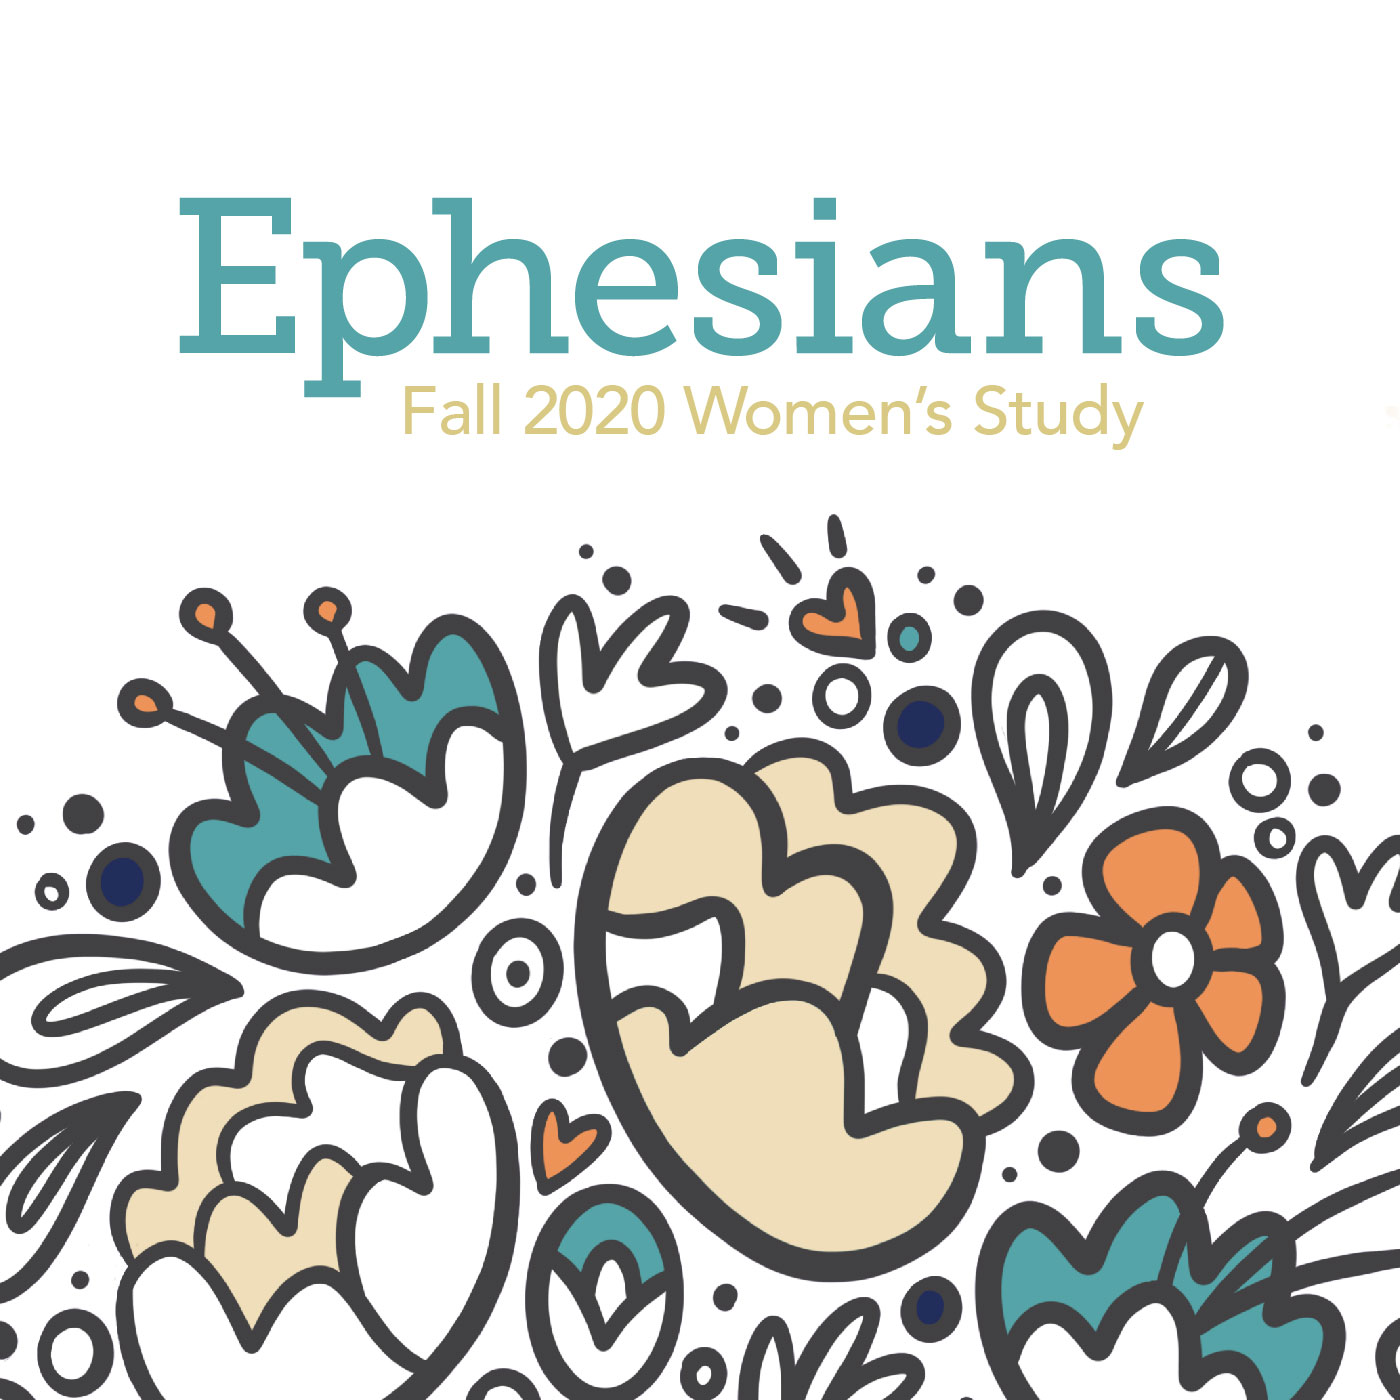 Ephesians 2:11-22